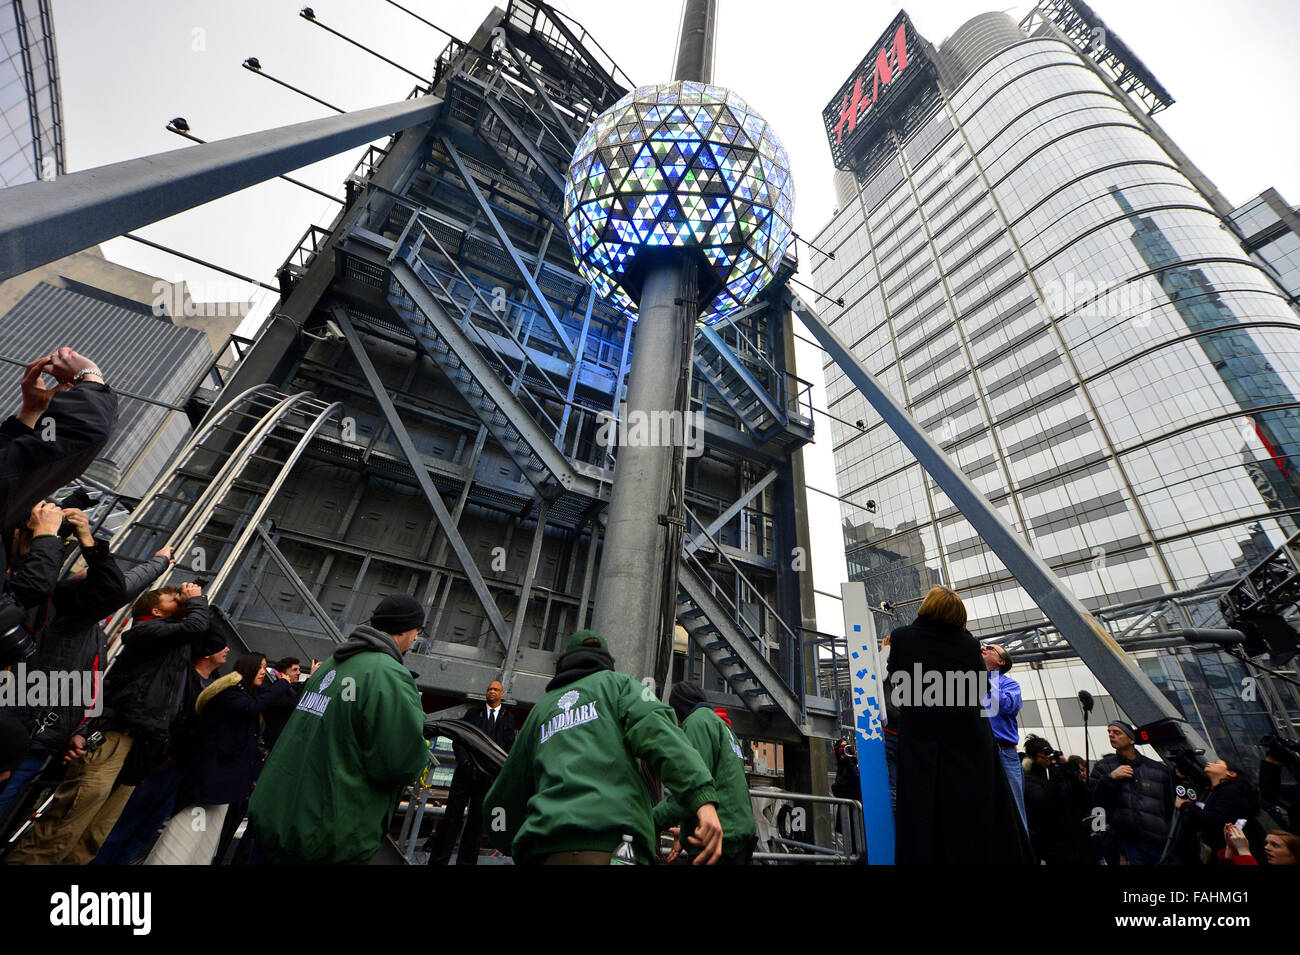 New York, Stati Uniti d'America. 30 Dic, 2015. Il Times Square Capodanno sfera viene testato il giorno prima i festeggiamenti di Capodanno in cima al tetto di una Times Square a New York, gli Stati Uniti, il 30 dicembre, 2015. L'iconico Times Square Capodanno palla è accesa e inviato il 130-piede pole in cima a una Times Square di mercoledì per la preparazione finale. Il 32.000 led che sono nella sfera può essere controllata individualmente da software. Credito: Wang Lei/Xinhua/Alamy Live News Foto Stock